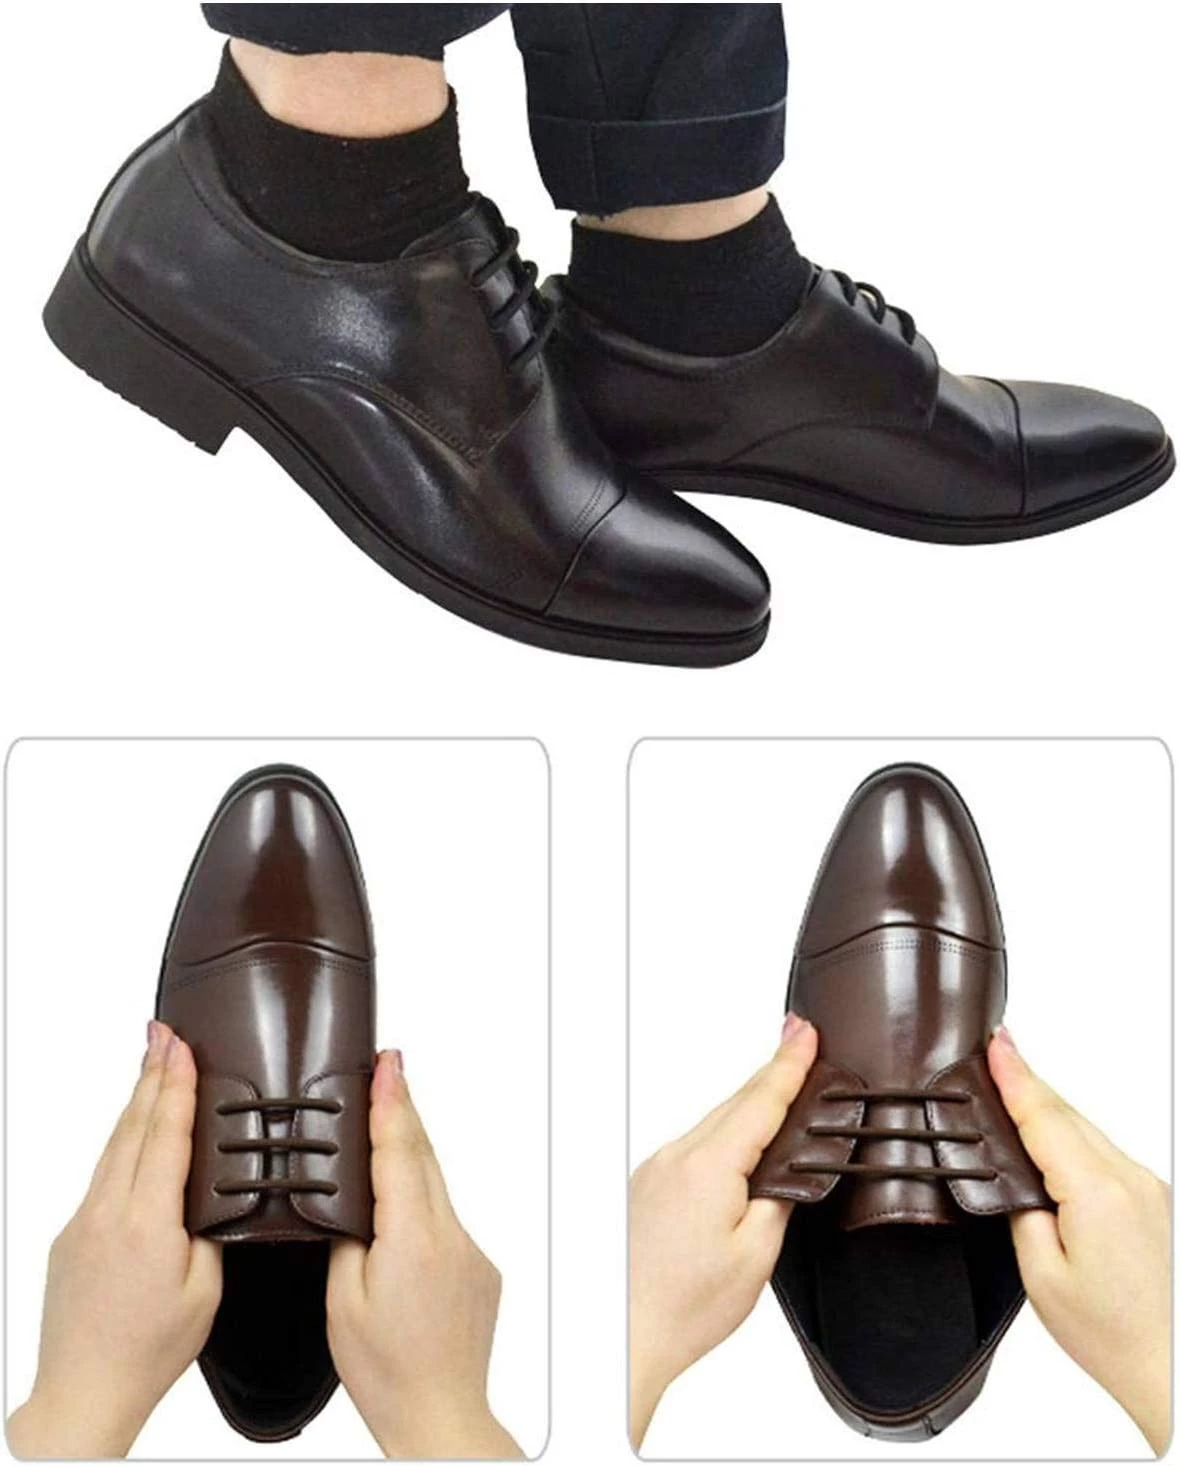 أربطة حذاء لايفي بدون أربطة للأحذية الرسمية من السيليكون المرن للأحذية، بدون أربطة حذاء للأحذية الرسمية / المكتبية - اللون البني - زوج واحد، بني, بني -  B076497MND